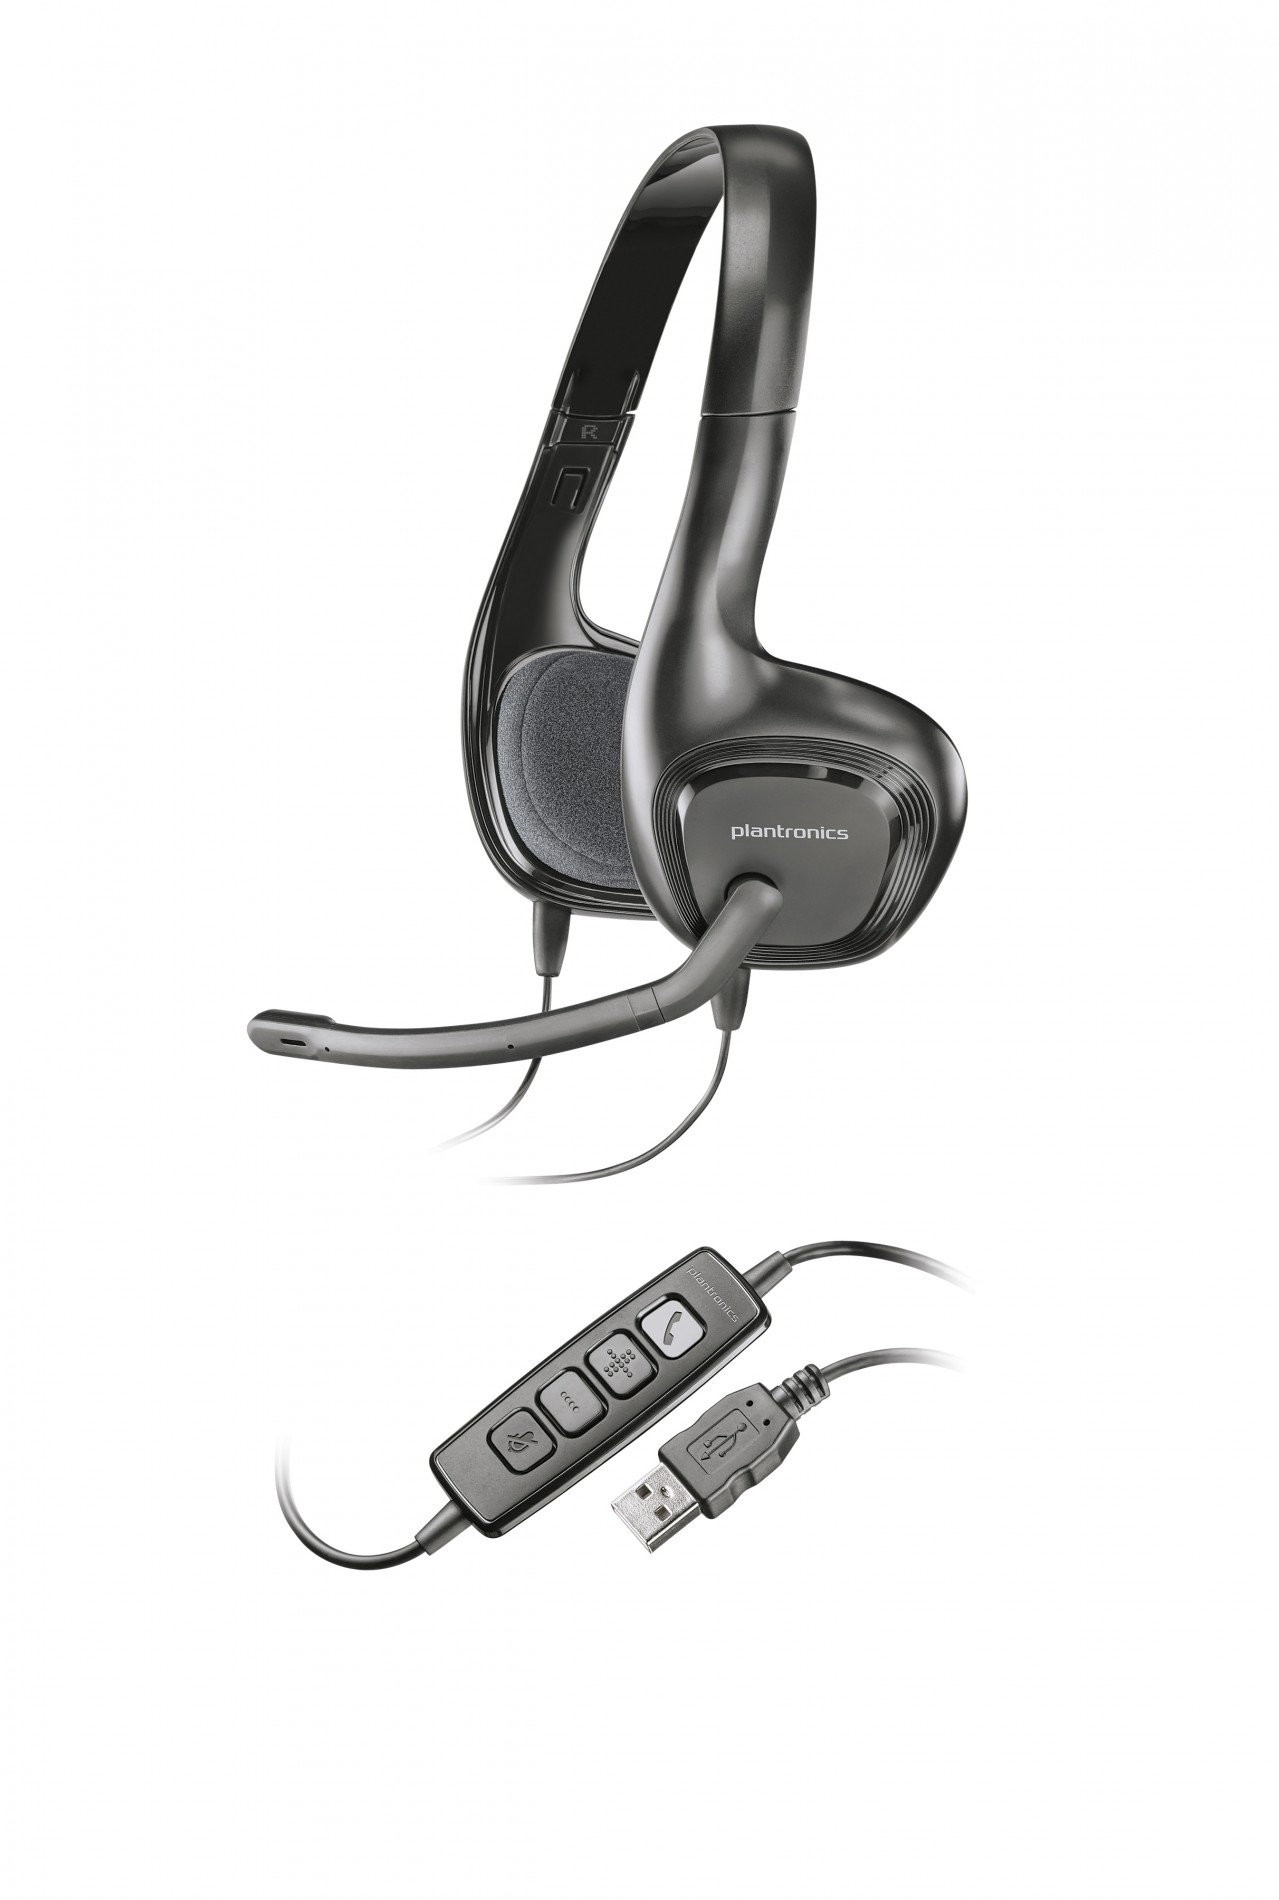 Plantronics .Audio 628 — мультимедийная USB-гарнитура для компьютера